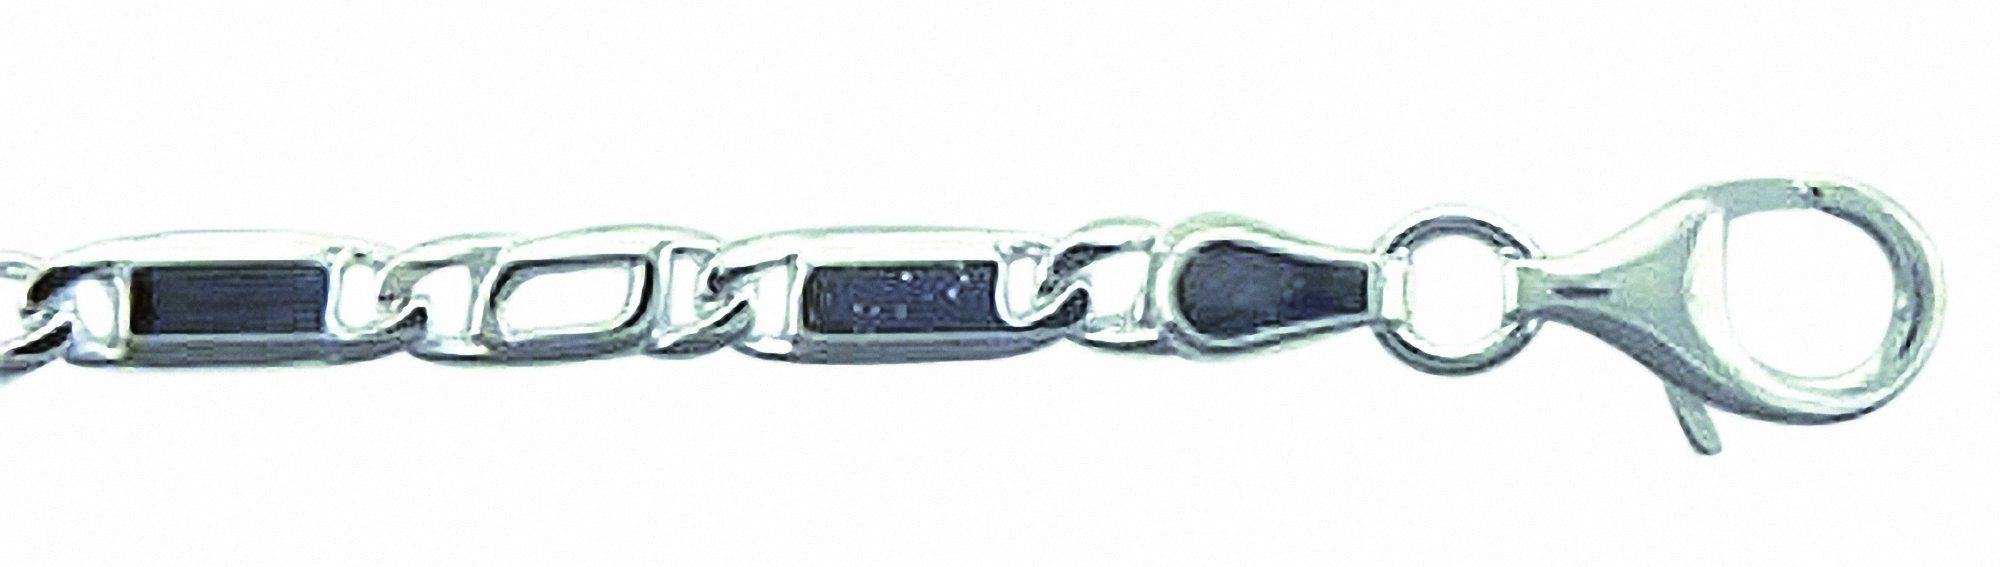 Damen Schmuck Adelia´s Silberkette 925 Silber Fantasie Halskette 45 cm, 45 cm 925 Sterling Silber Fantasie​kette Silberschmuck f